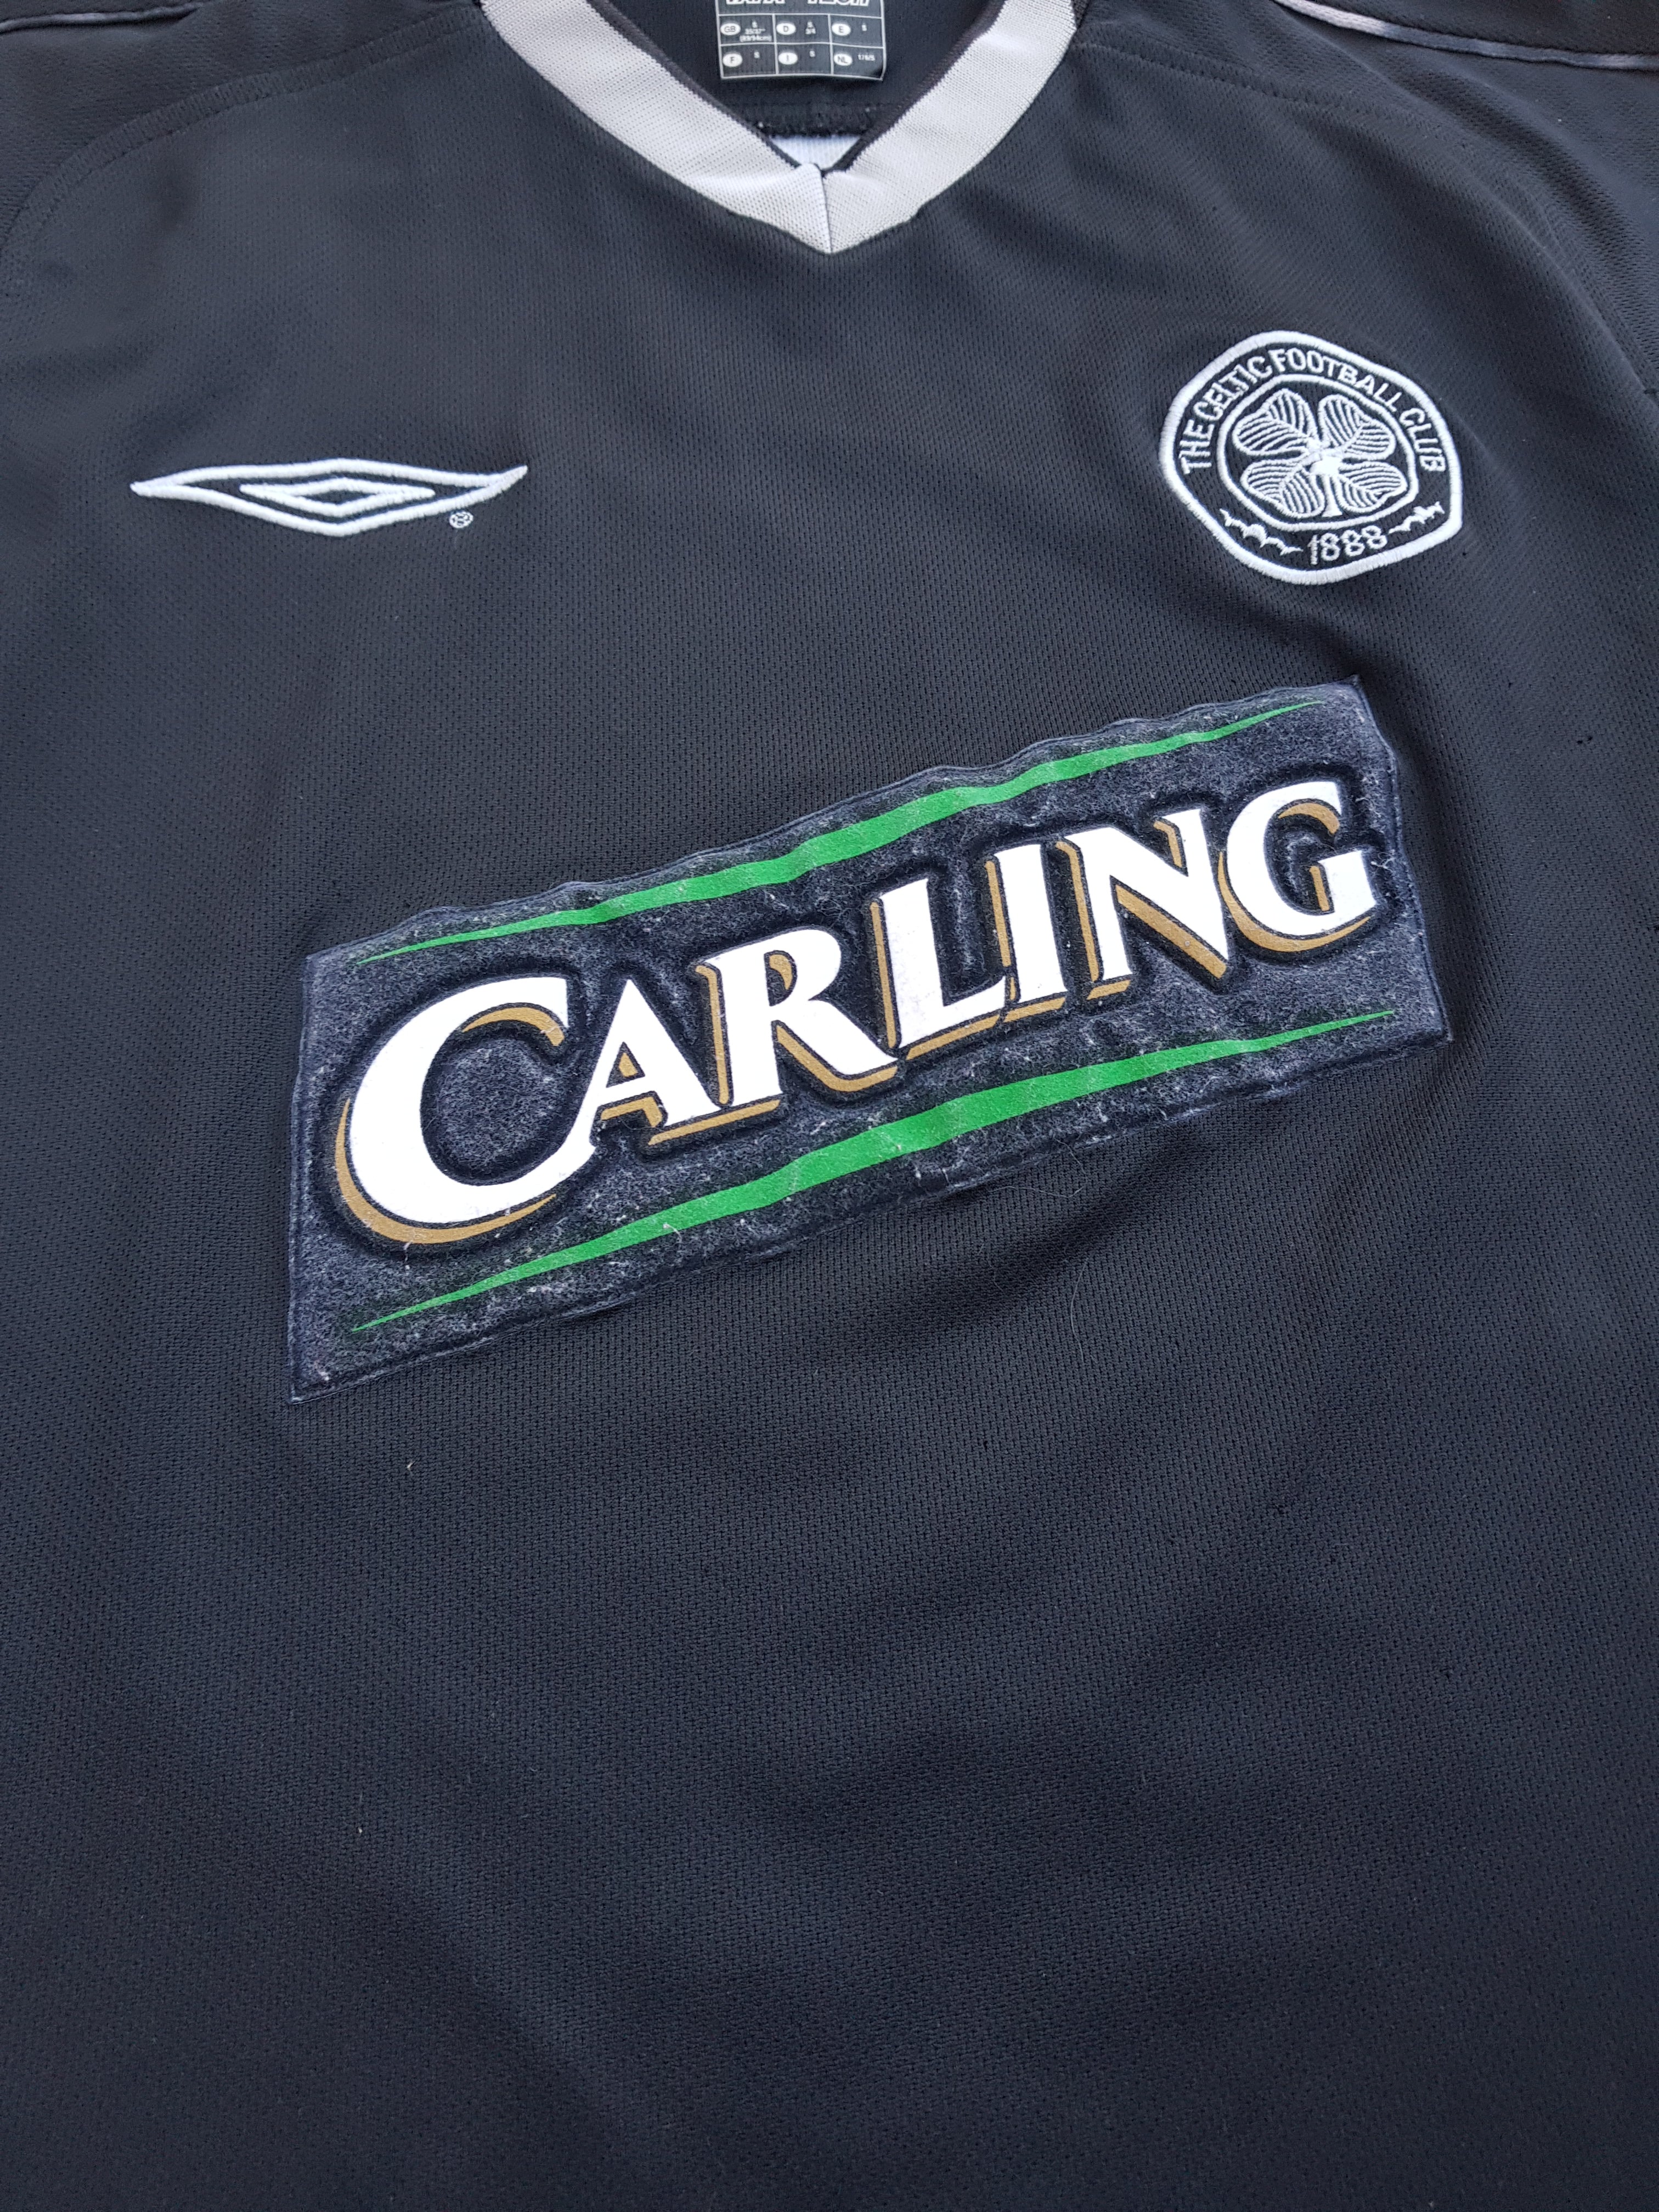 Celtic 2003-04 GK Home Kit